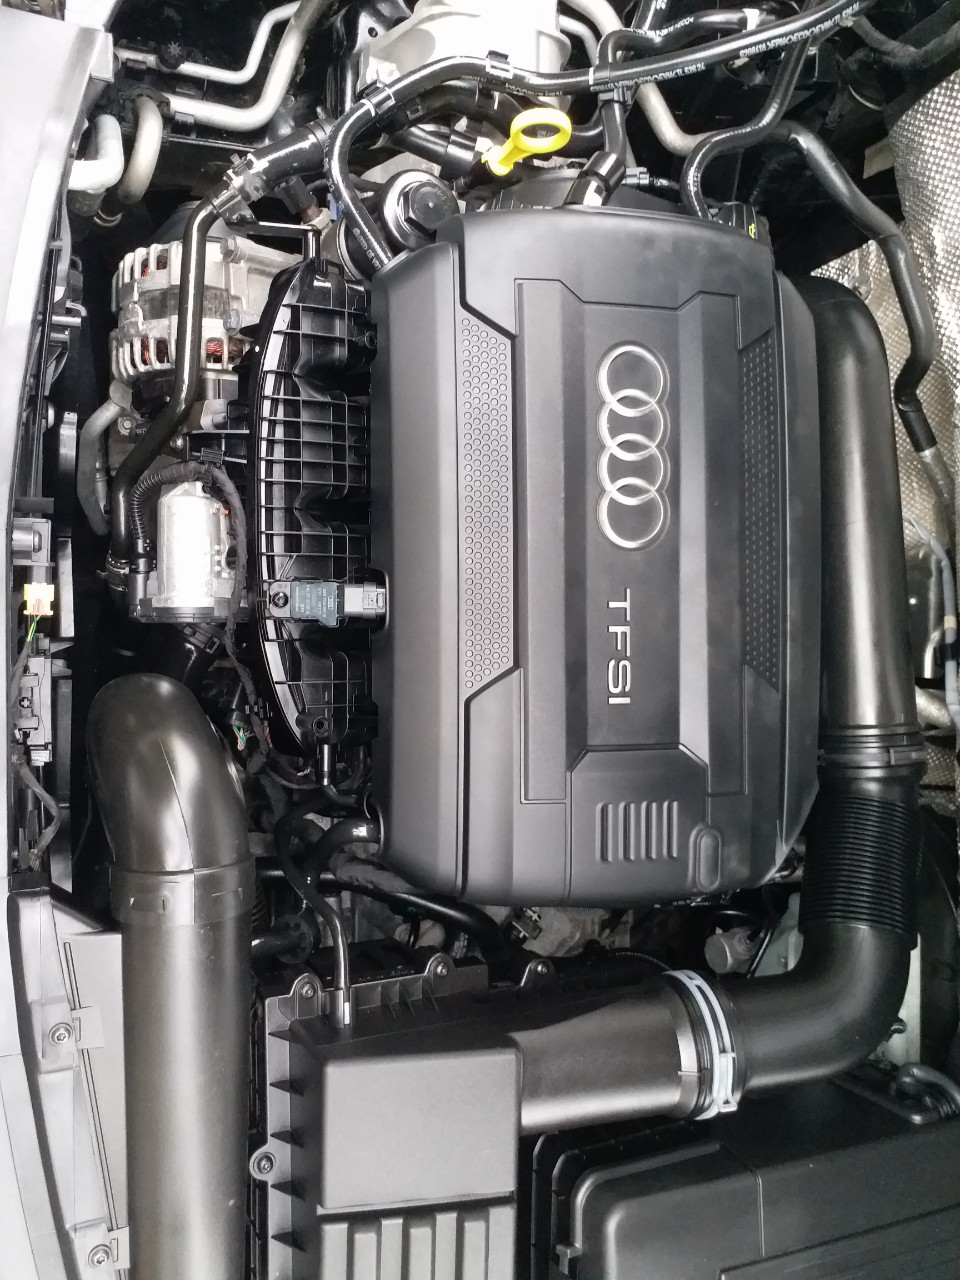 Audi Q3 2.0   2016 - Bán Audi Q3 2.0 sản xuất 2016, đăng ký 2017, màu đen /da bò, đăng ký tư nhân chính chủ